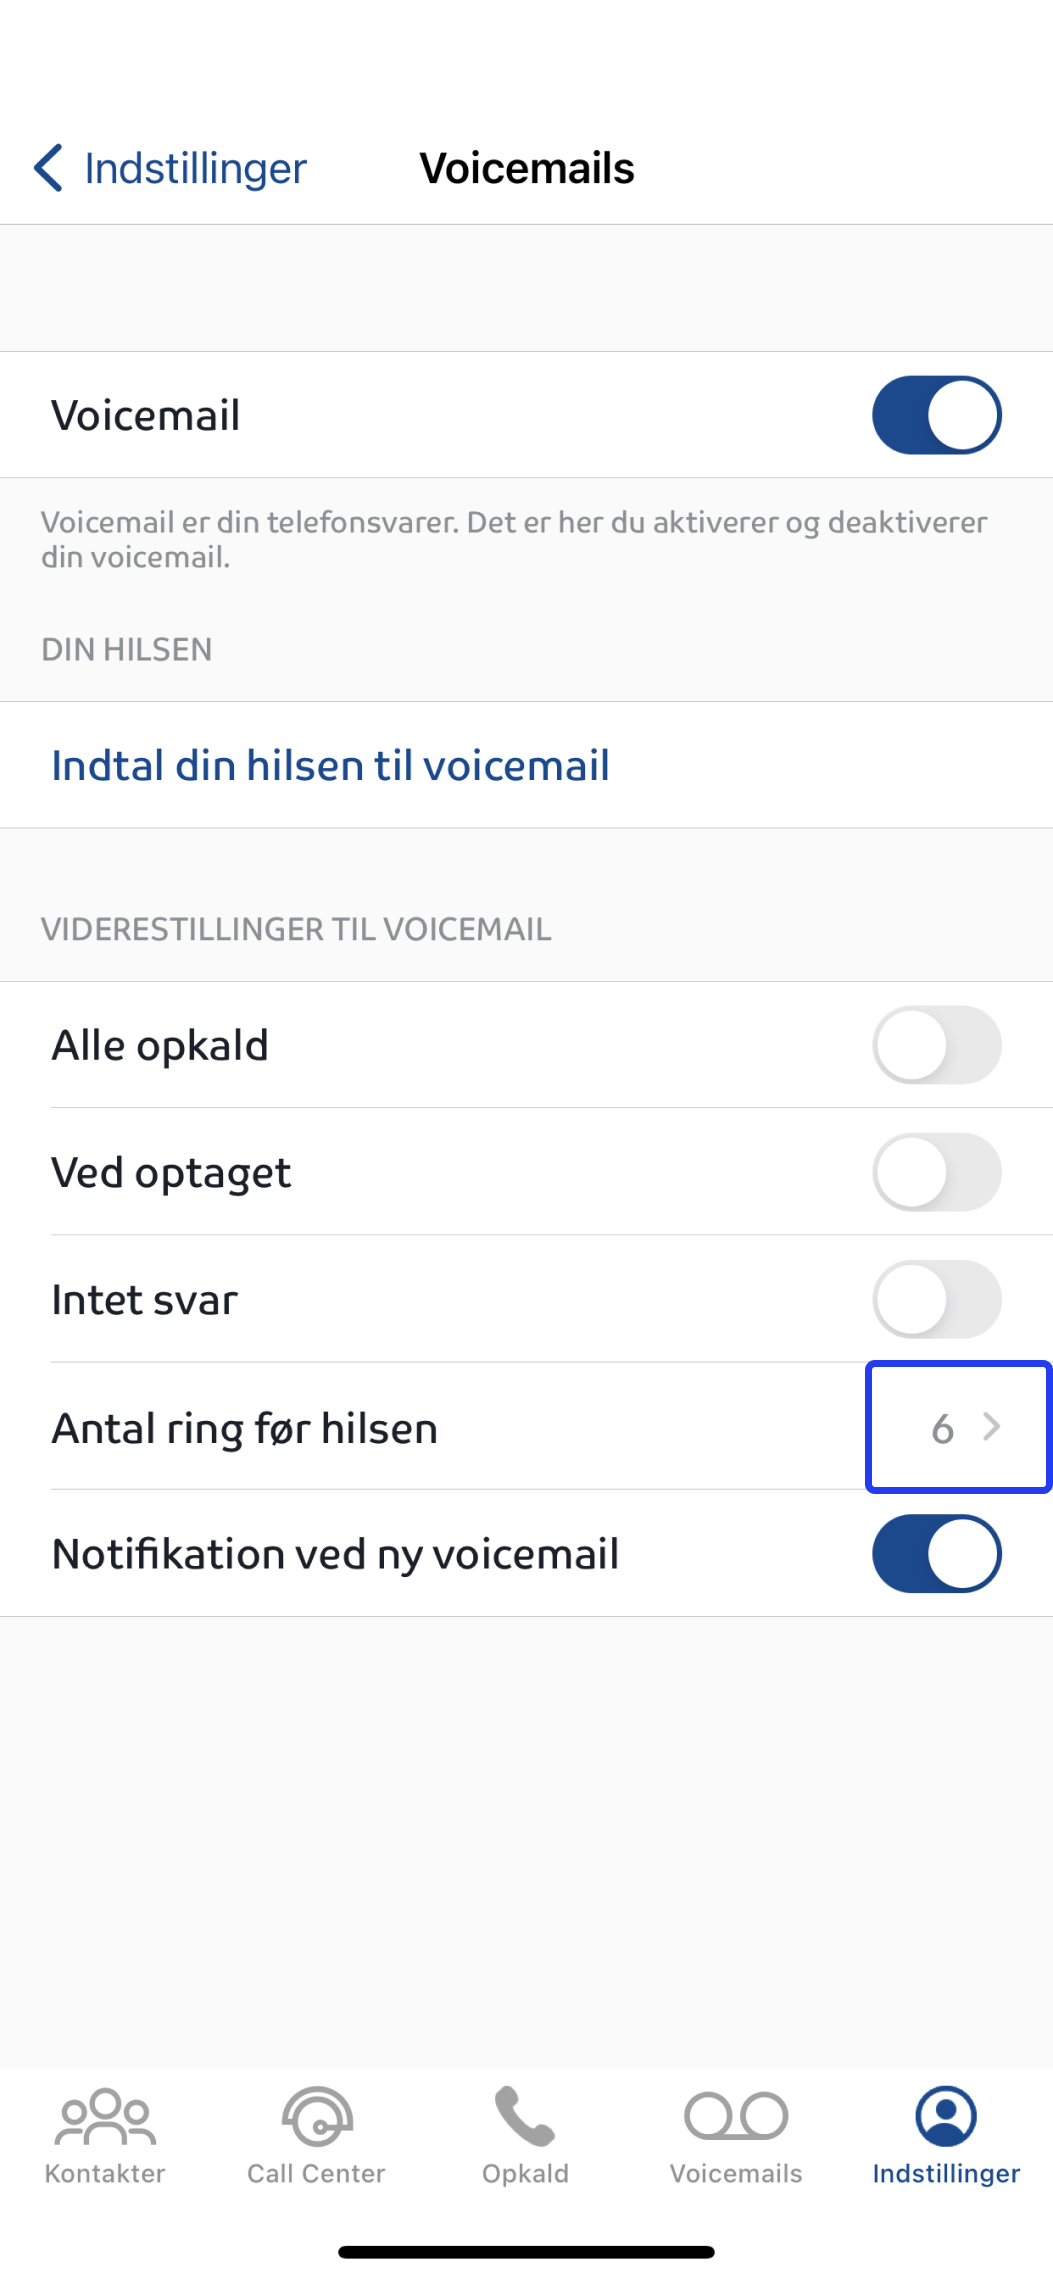 Billedet viser antal ring før hilsen i Assist appen